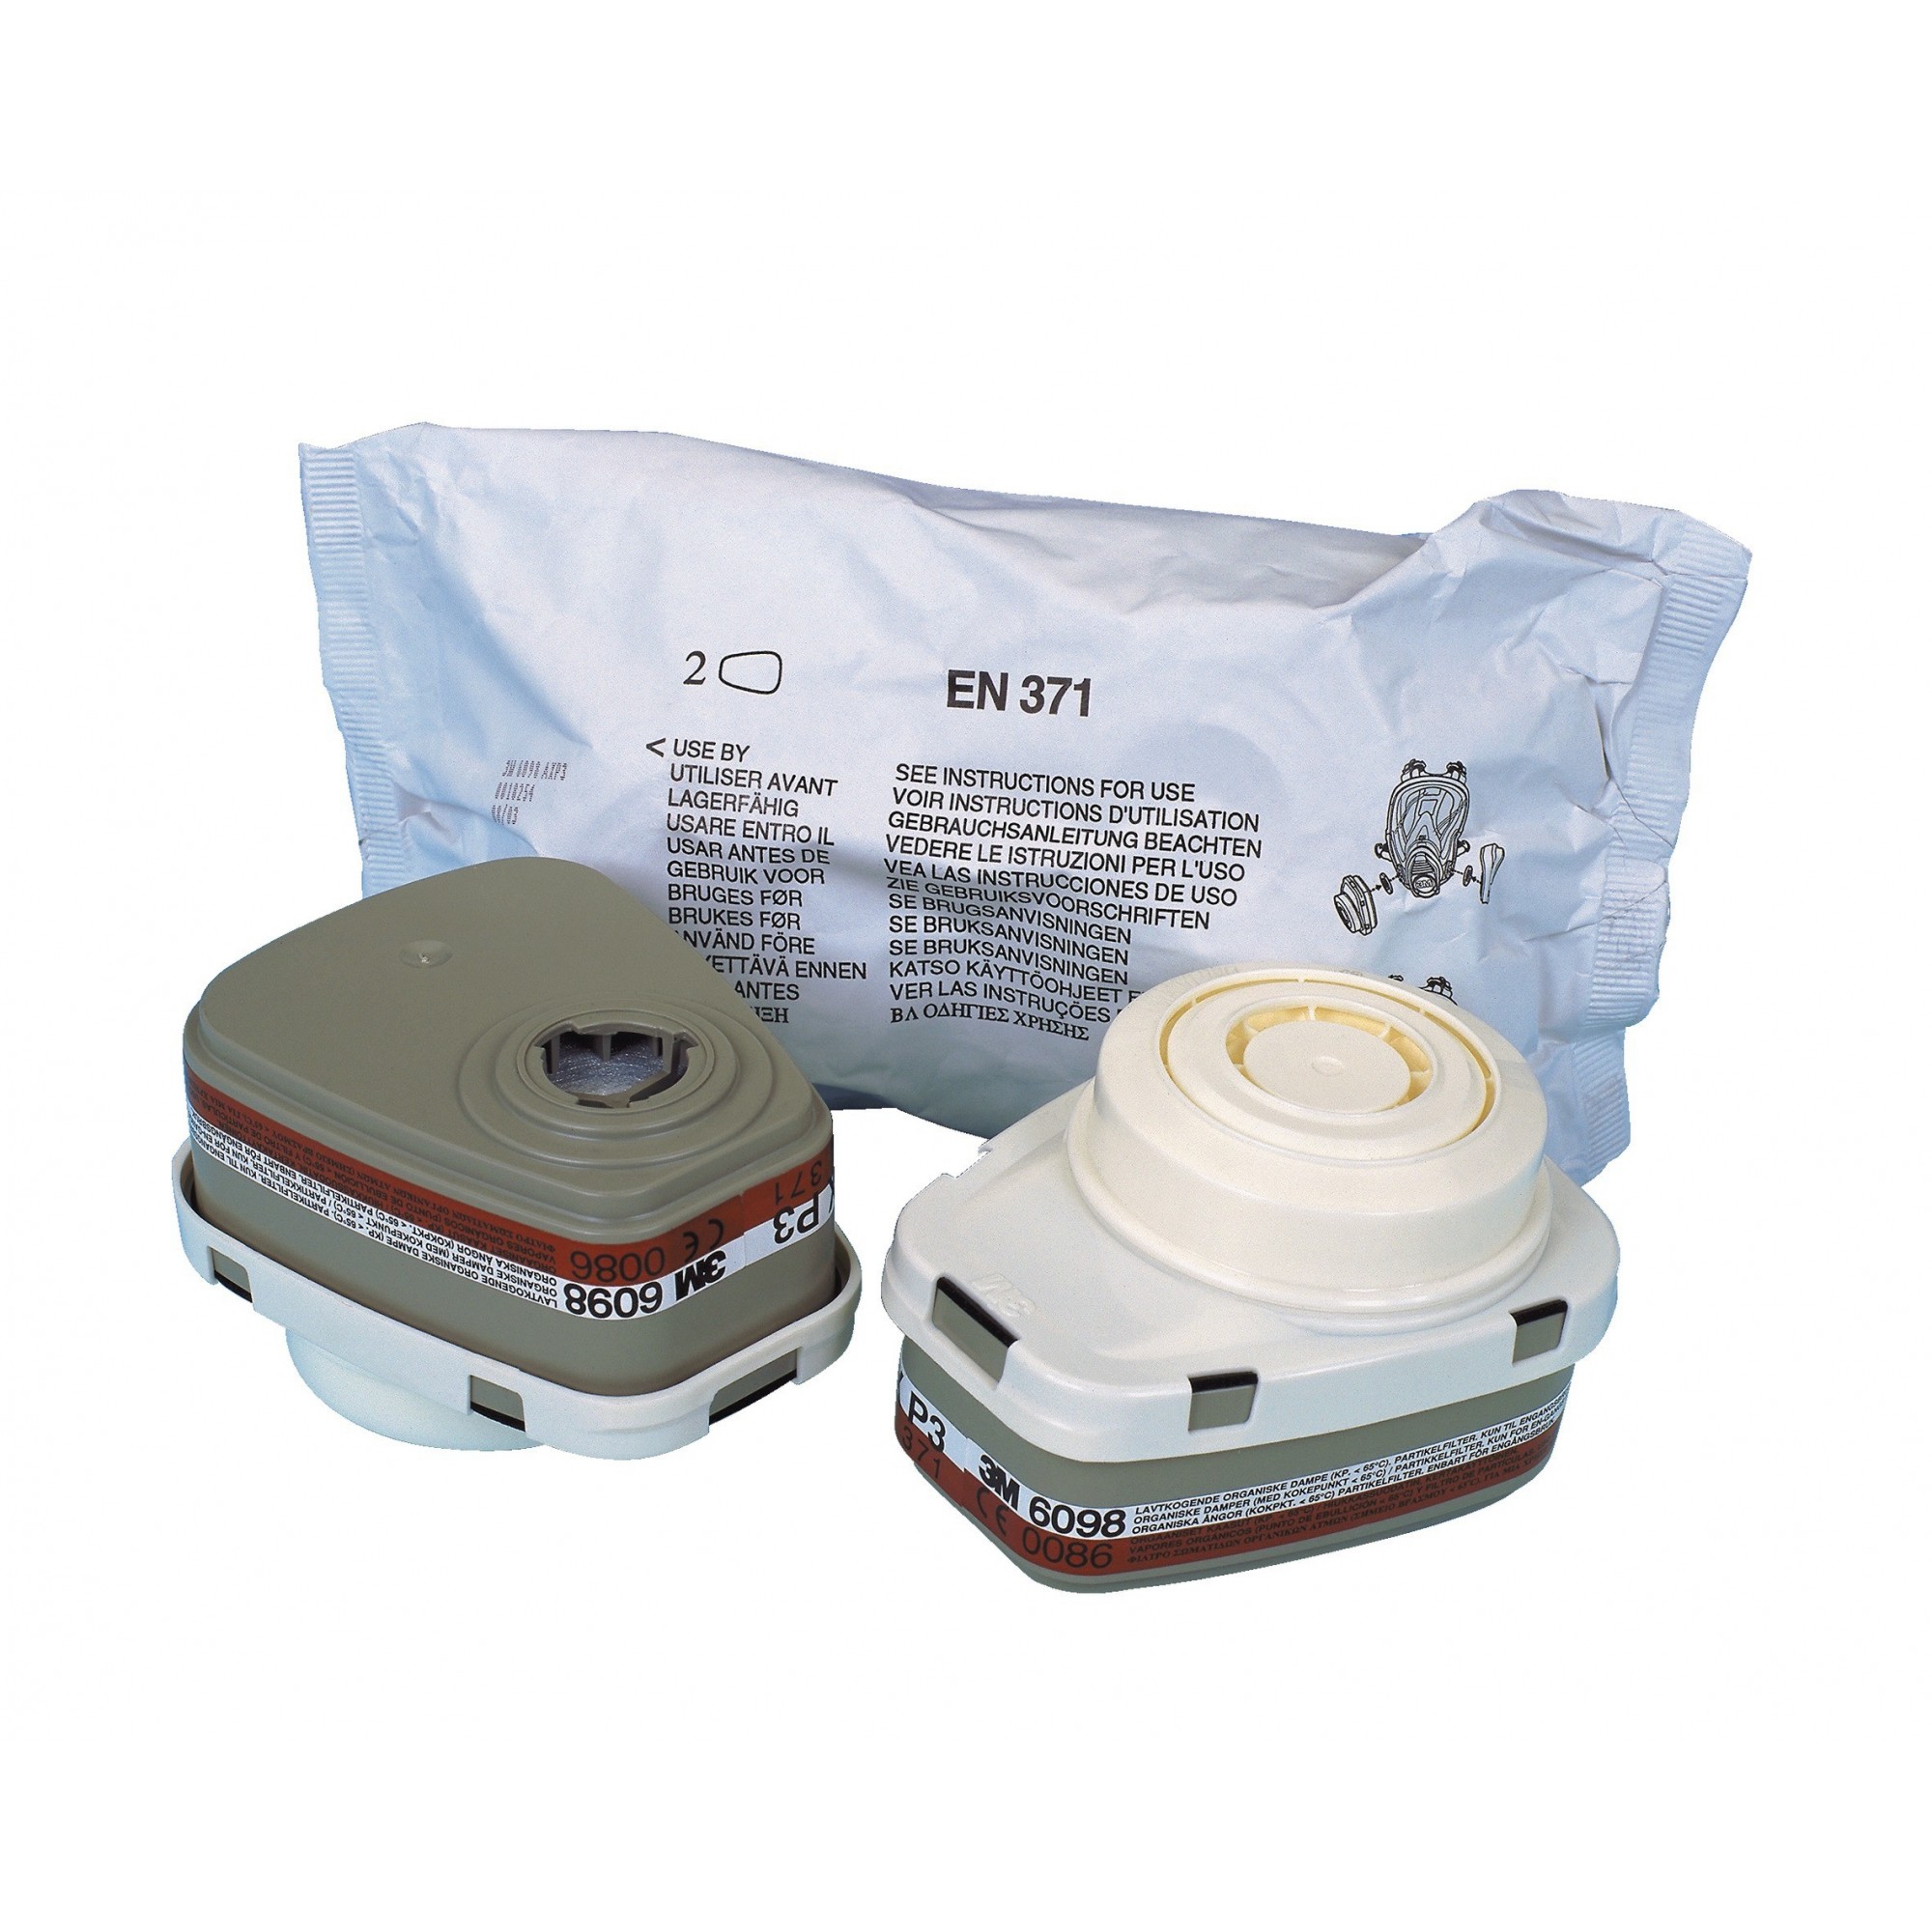 2 Filtres combinés anti-vapeurs organiques AXP3 NR 6098 pour masques séries 6000 - 3M